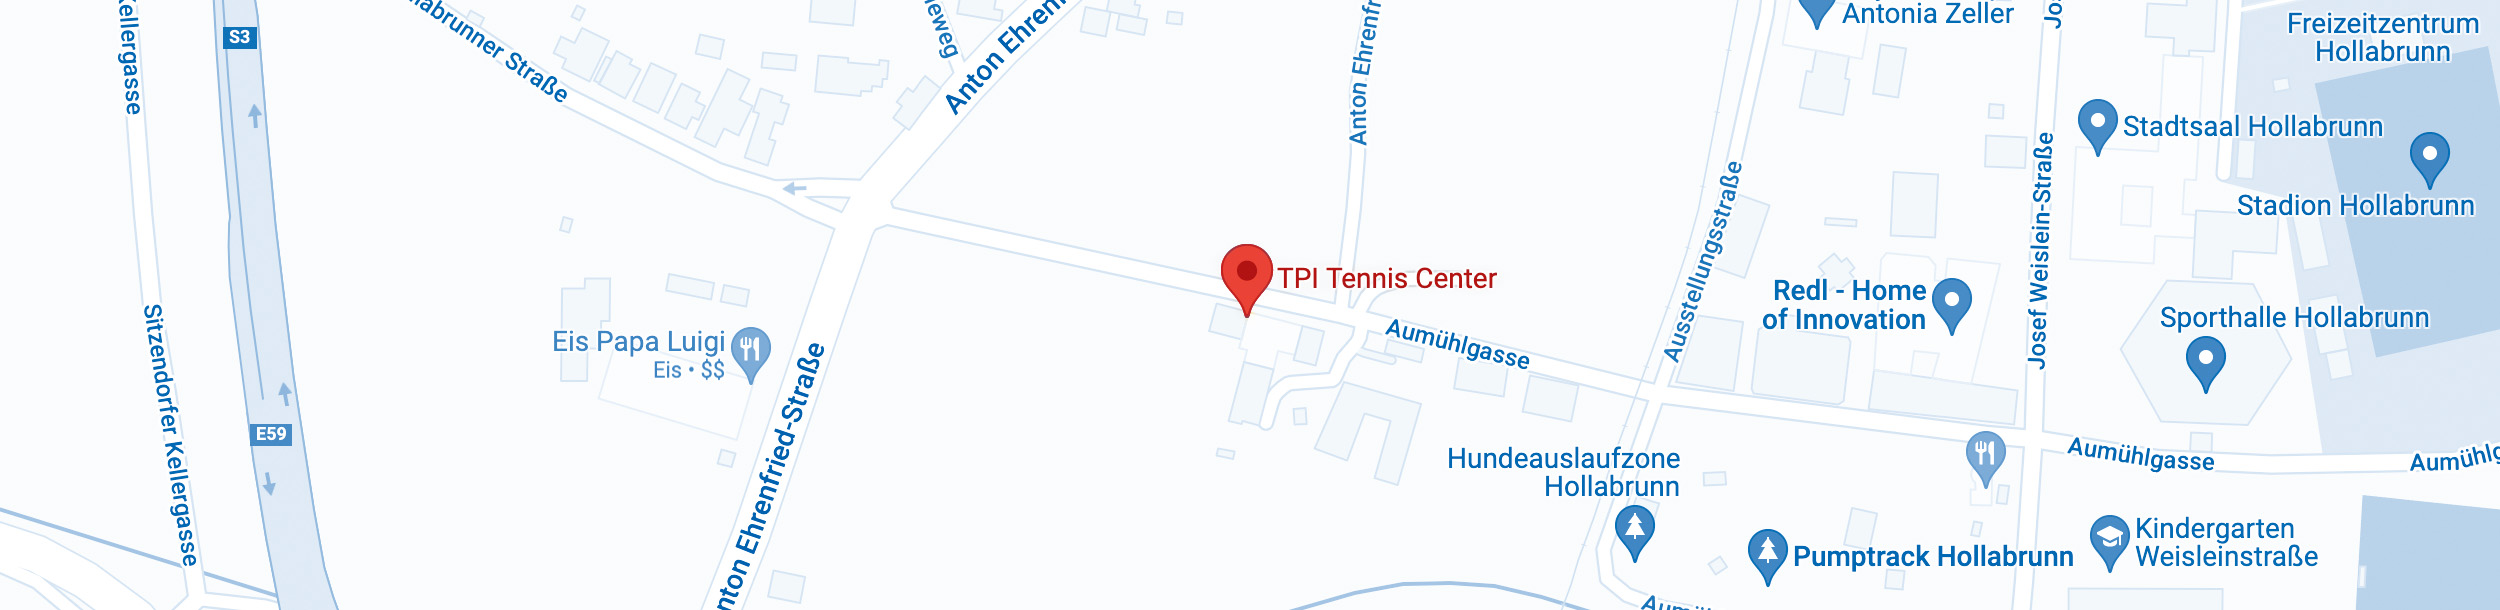 Google Maps ITP Tennis Center Hollabrunn